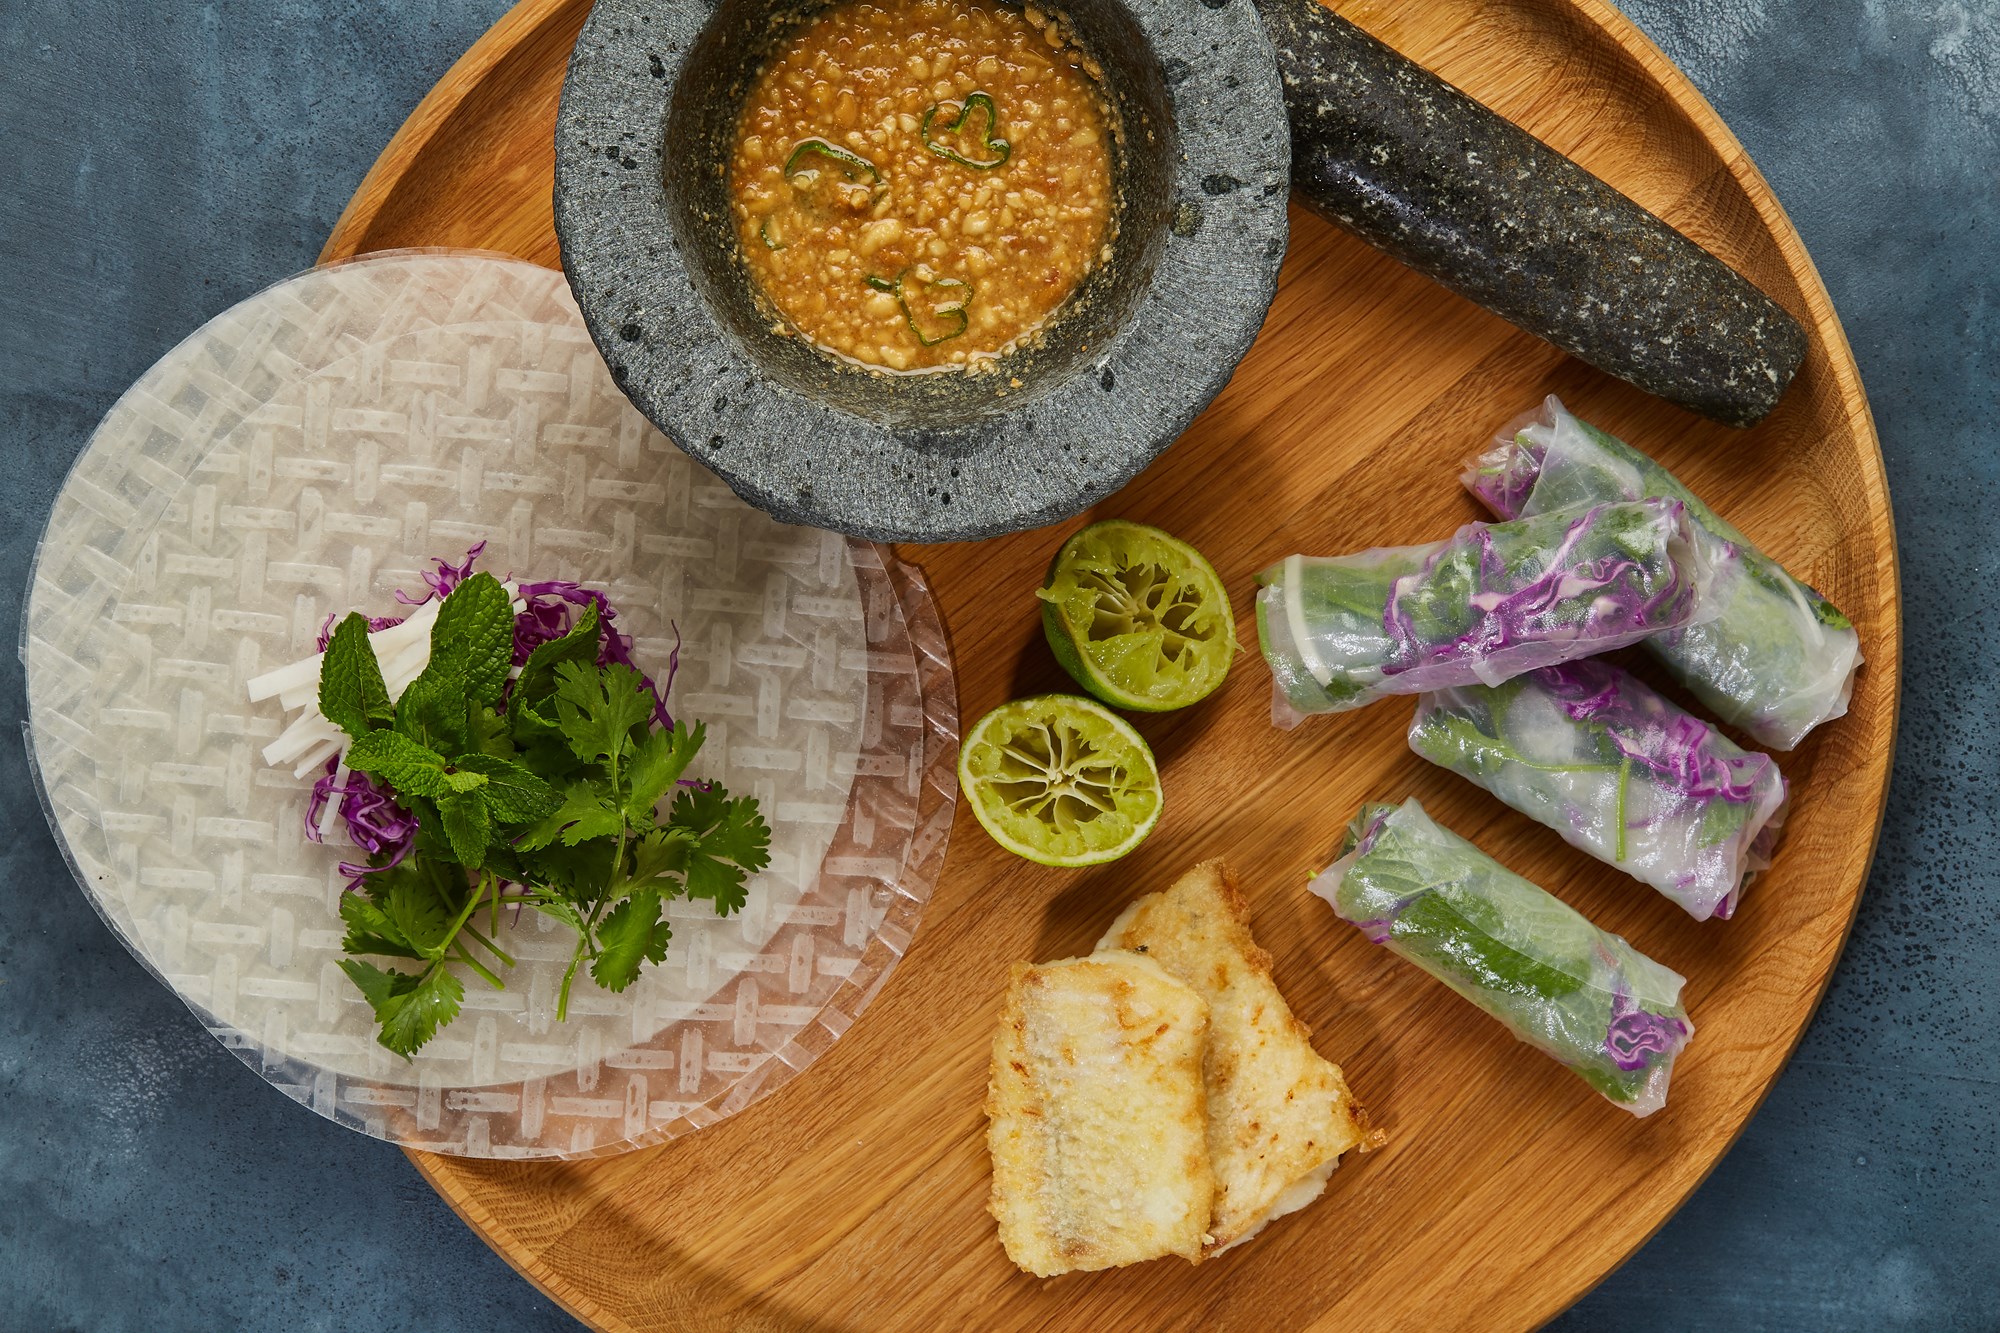 Gỏi cuốn - Vietnamesiske forårsruller med havkat, spidskål, glaskål og peanut-chili-dip